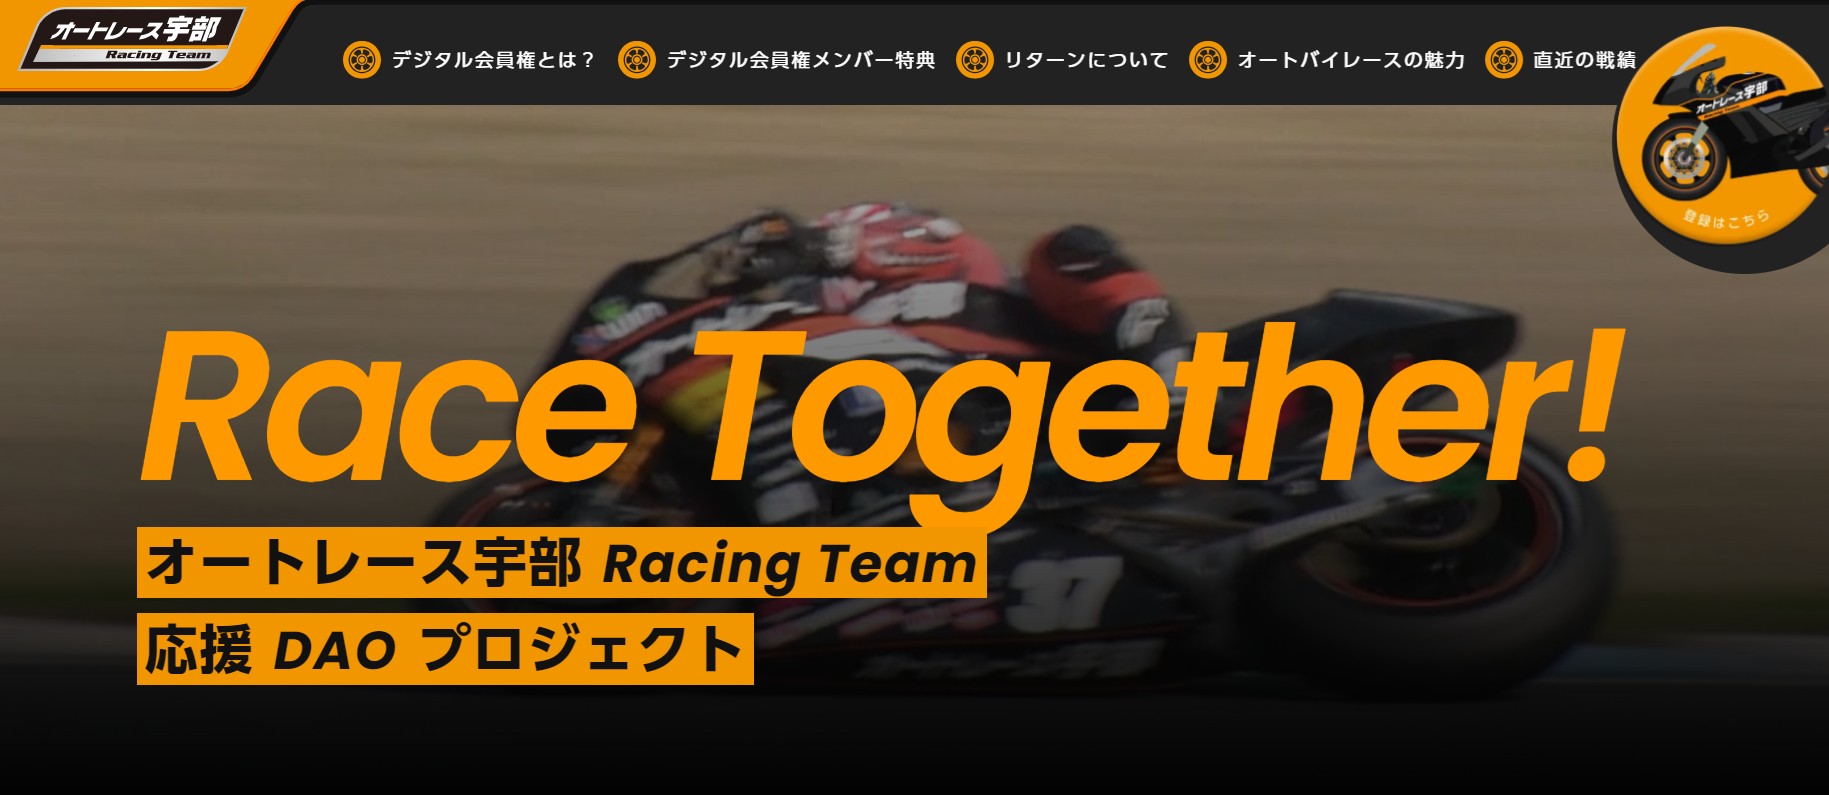 オートレース宇部 Racing Team: トップページ